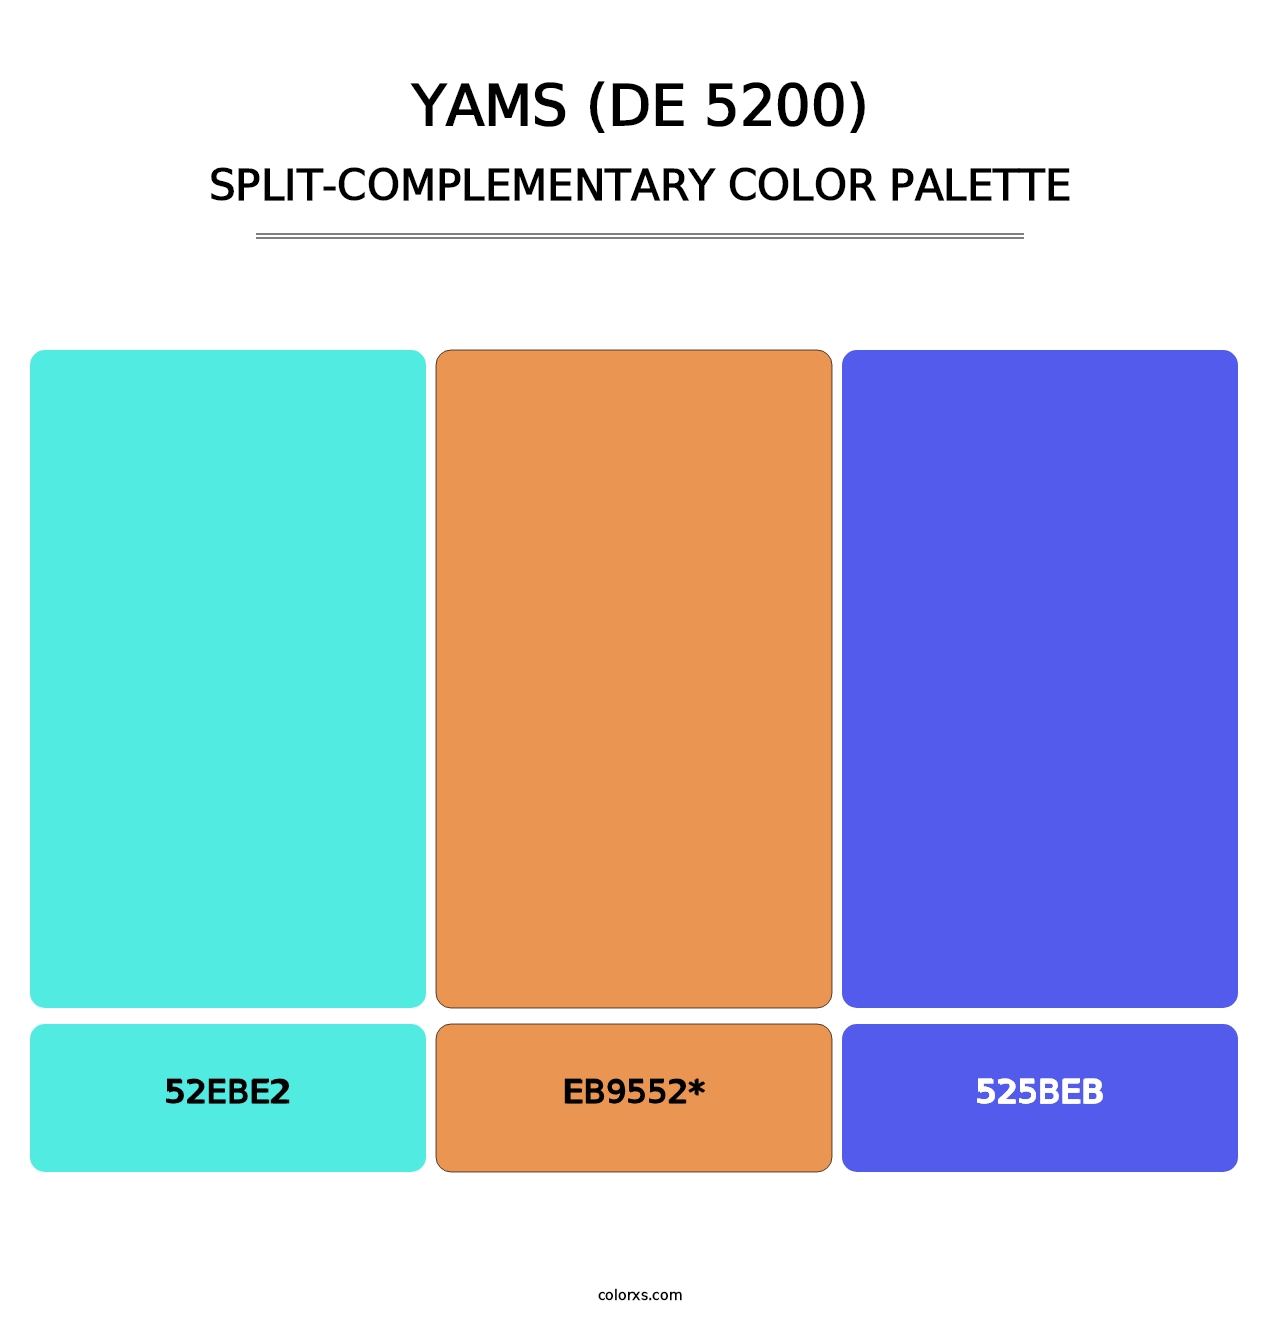 Yams (DE 5200) - Split-Complementary Color Palette